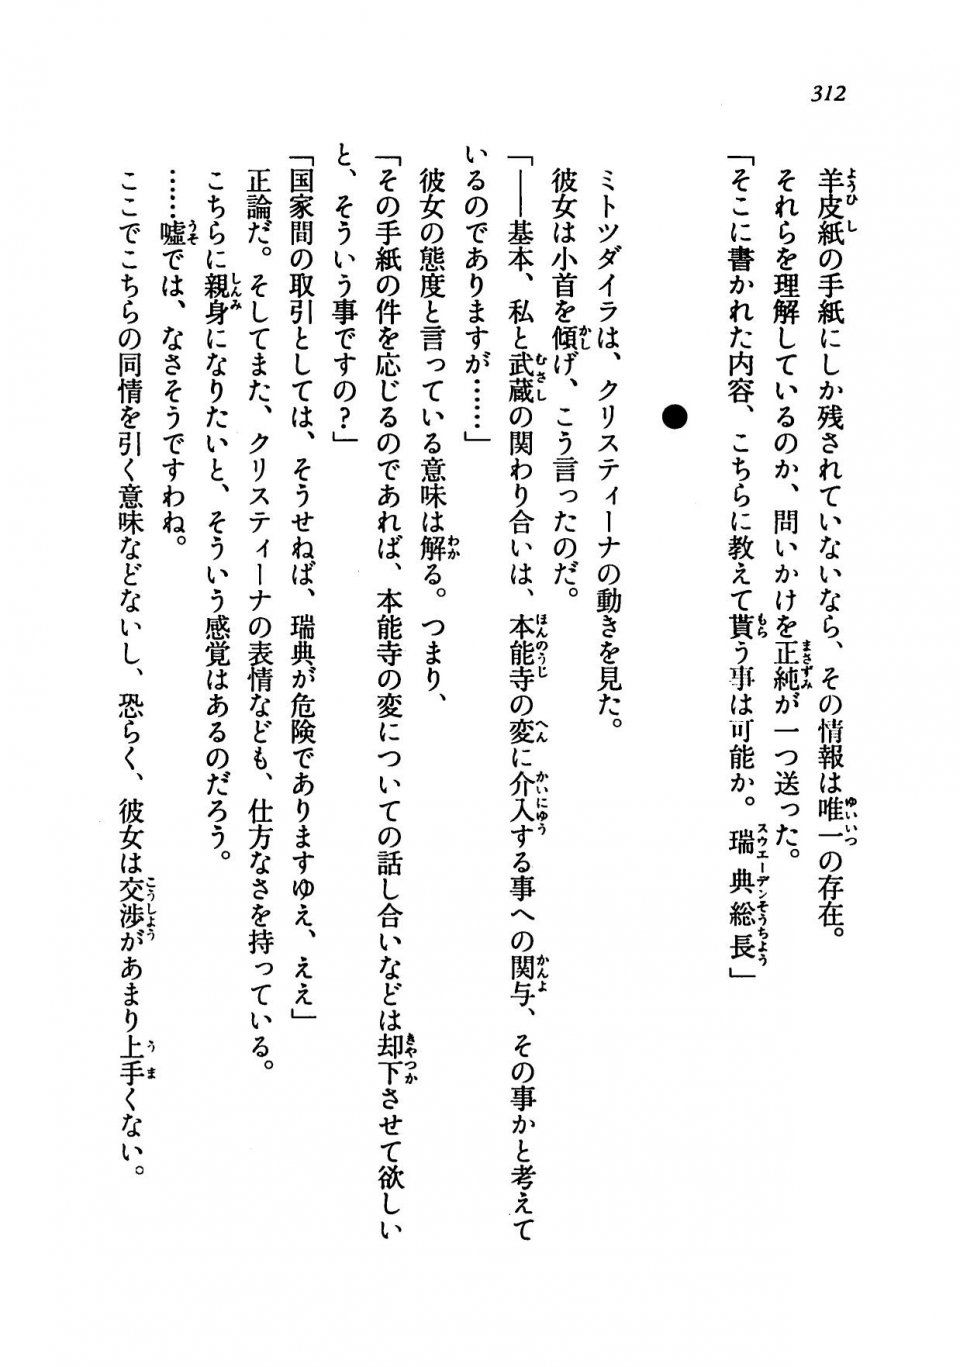 Kyoukai Senjou no Horizon LN Vol 19(8A) - Photo #312